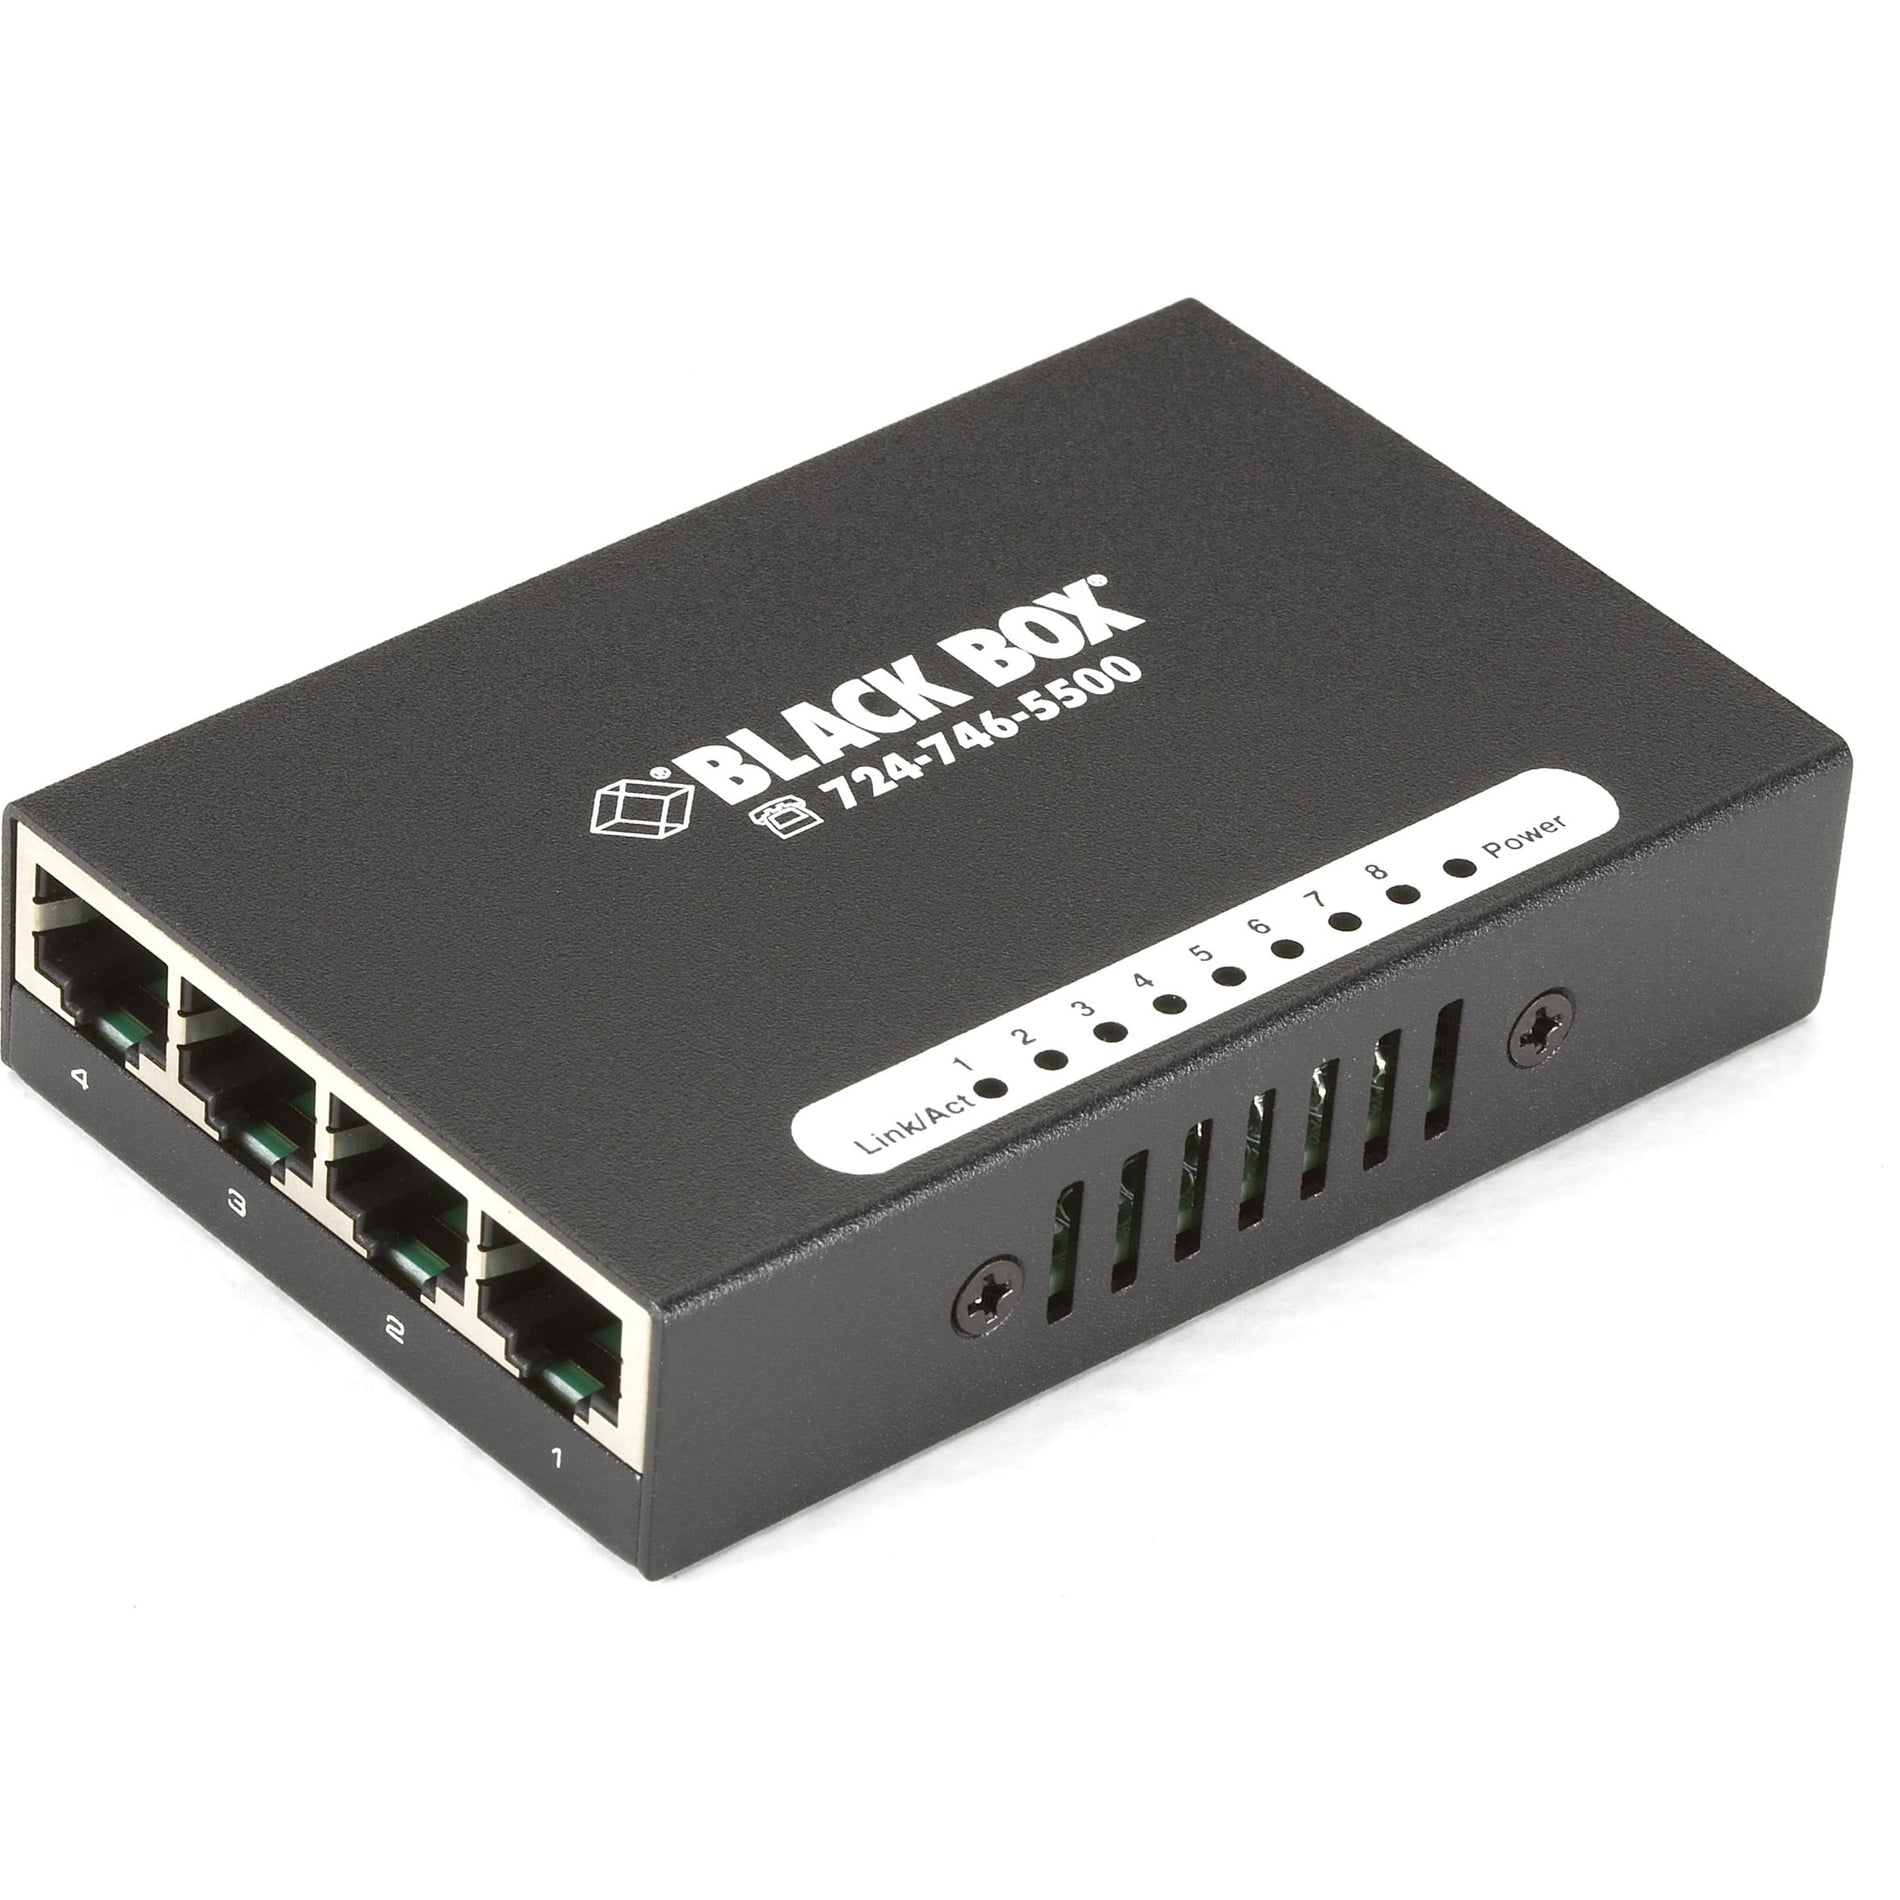 Caja Negra LBS008A Conmutador de 8 Puertos USB-Powered 10/100 Cumple con TAA Garantía de 1 Año